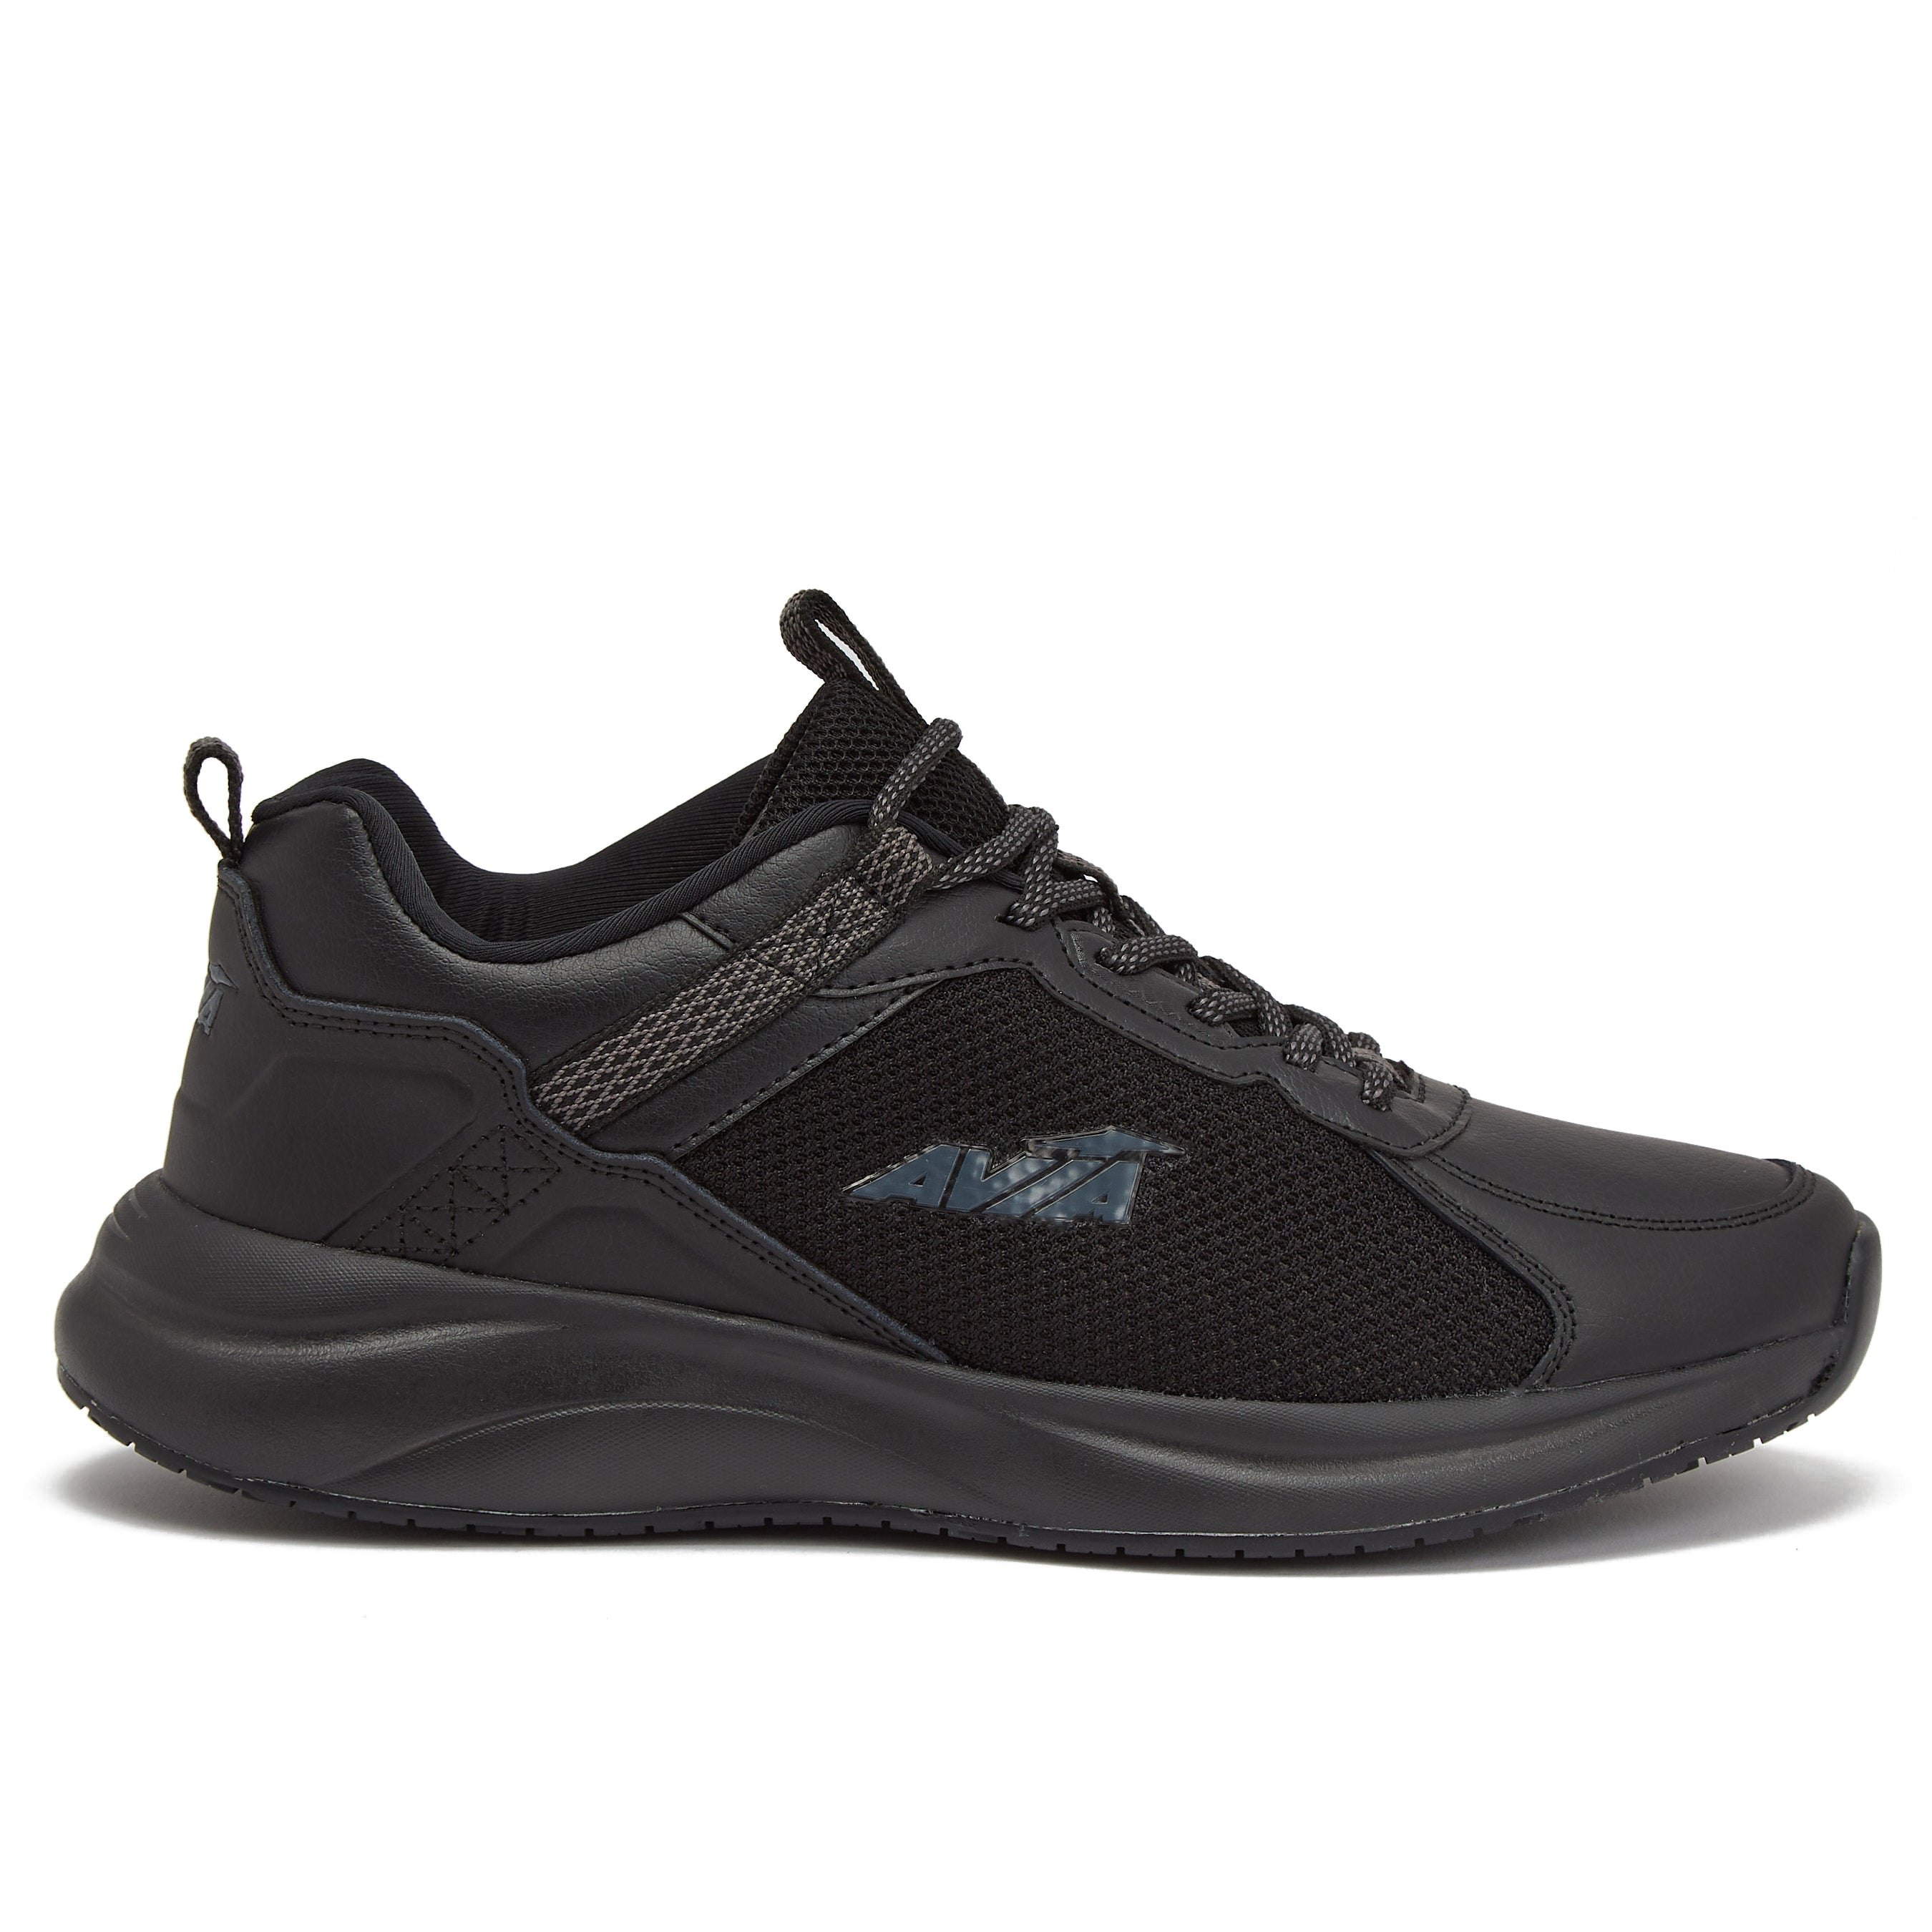 Avia Coast 2.0 Lightweight Memory Foam Walking Sneakers for Women - Black,  Olive Green, or Blue